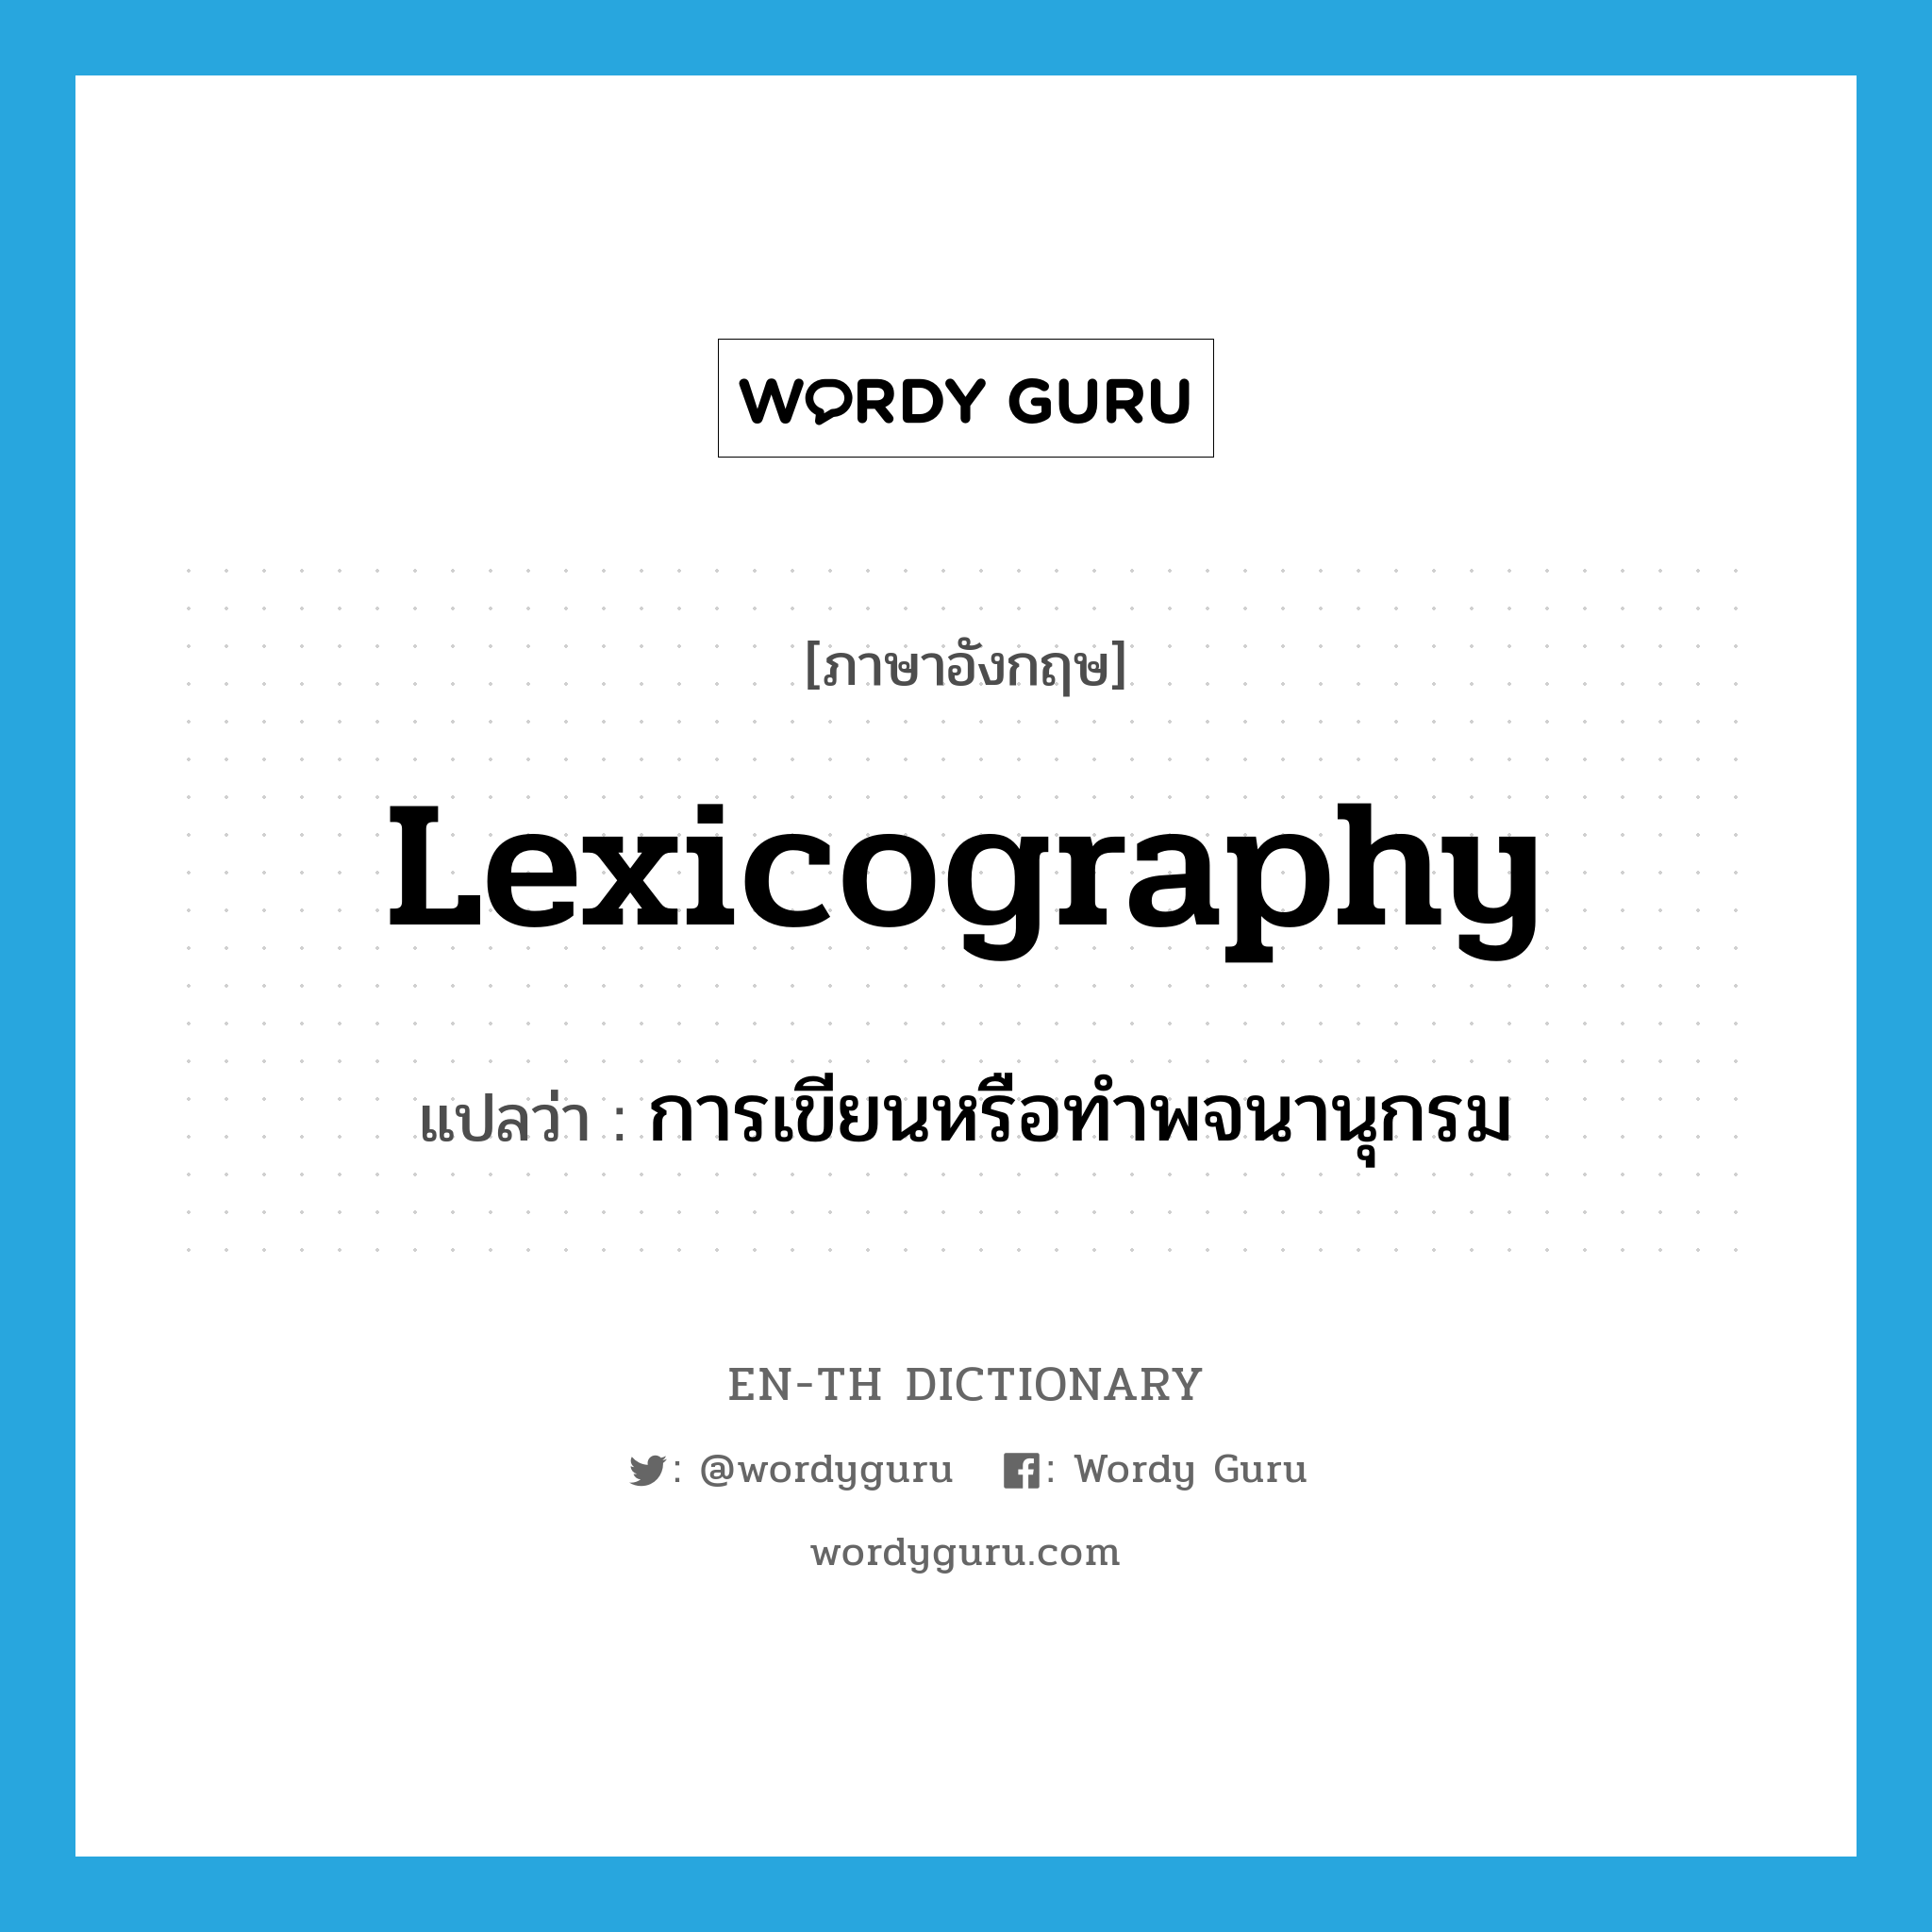 การเขียนหรือทำพจนานุกรม ภาษาอังกฤษ?, คำศัพท์ภาษาอังกฤษ การเขียนหรือทำพจนานุกรม แปลว่า lexicography ประเภท N หมวด N